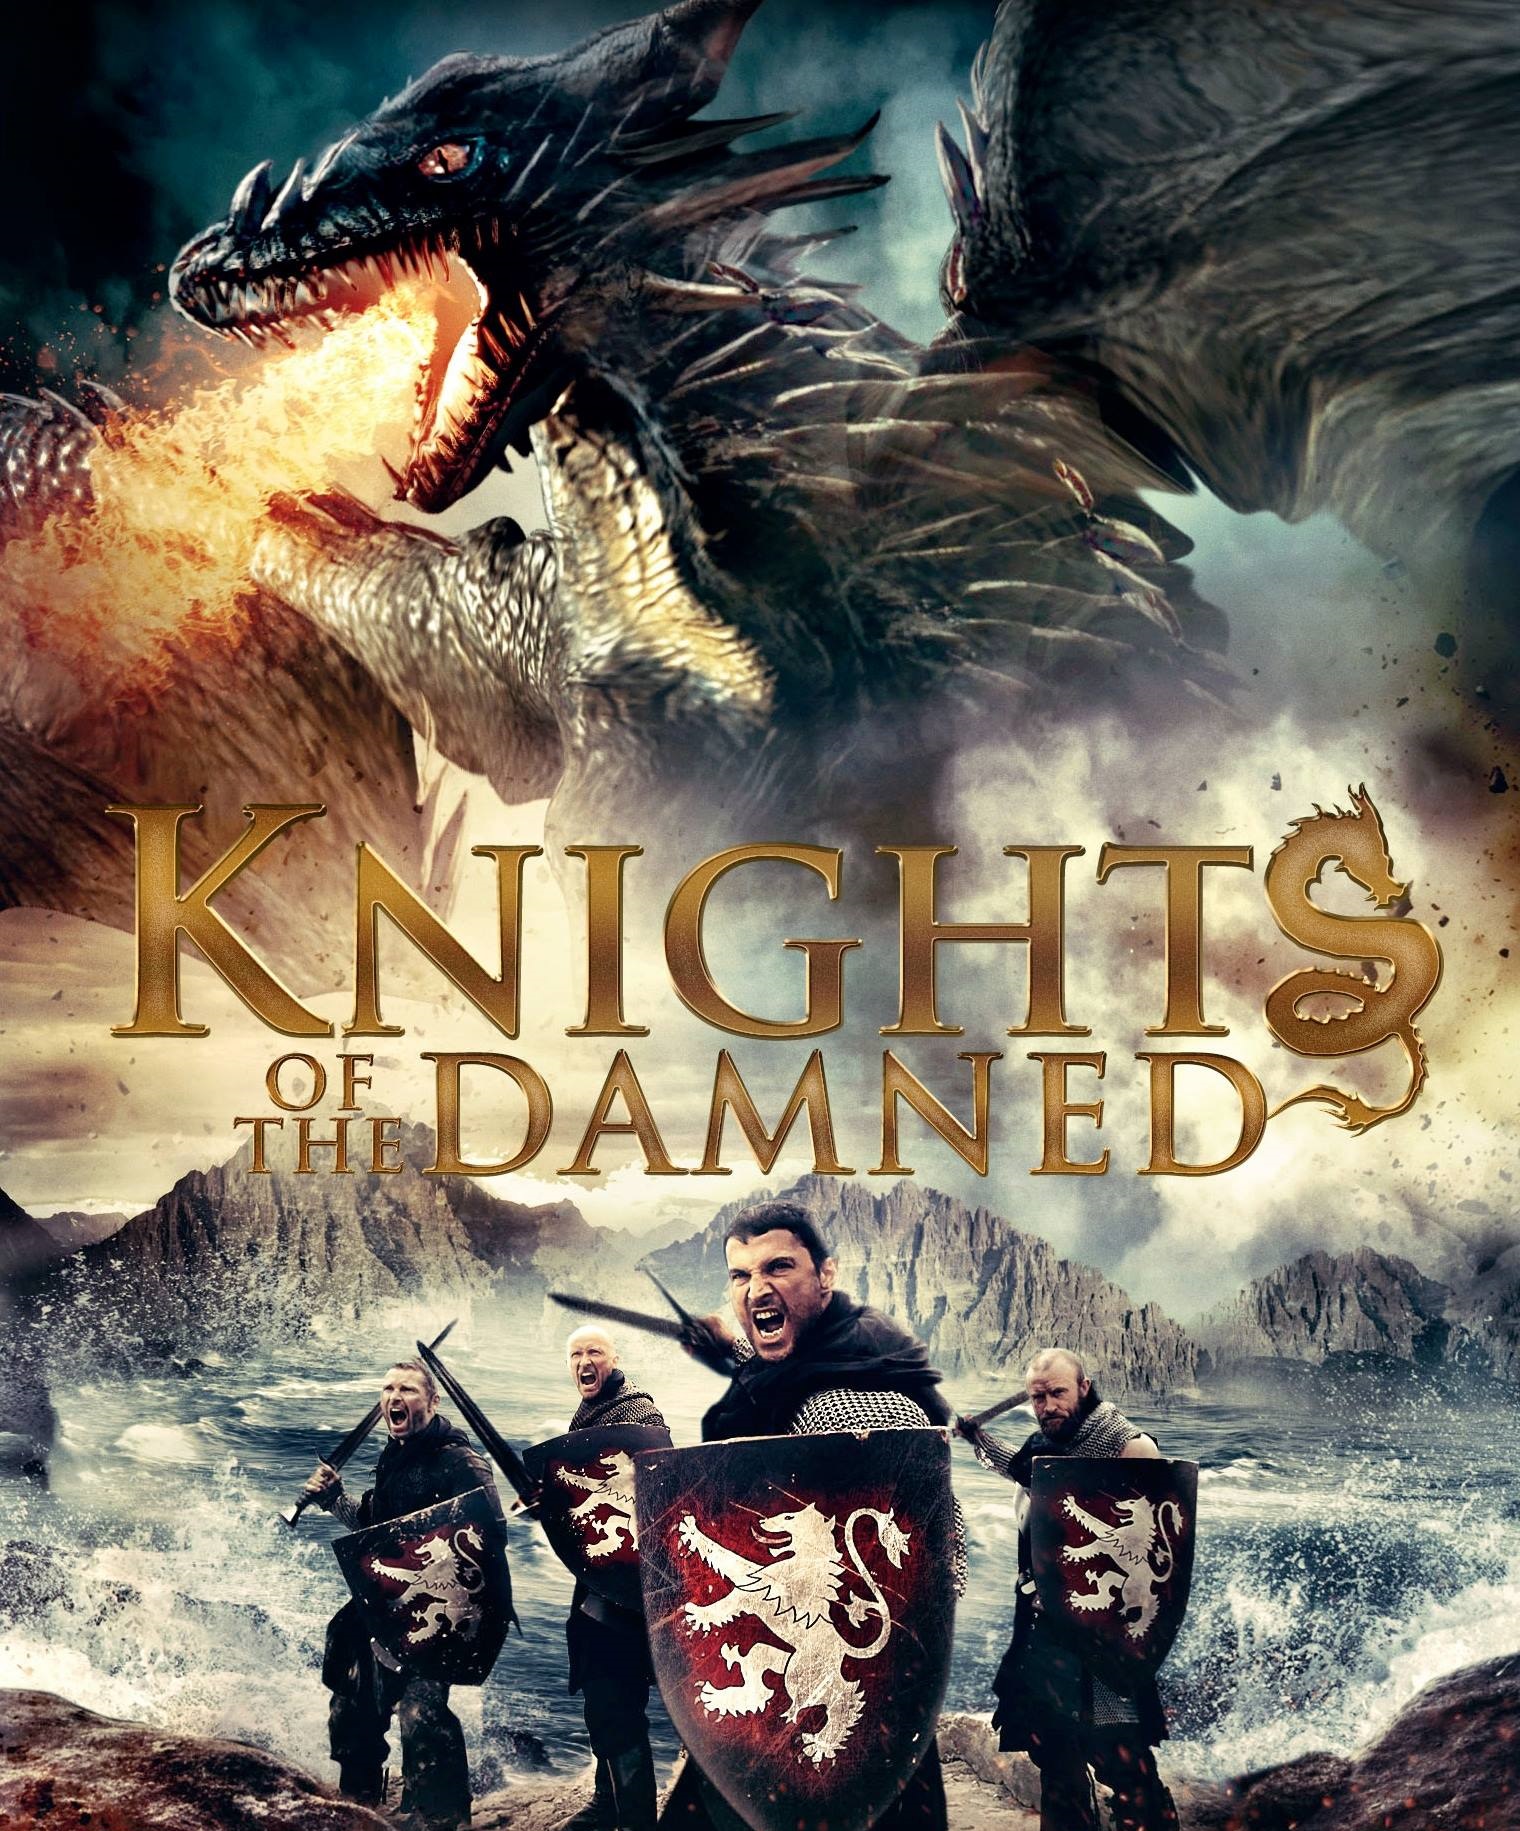 Nonton film Knights of the Damned layarkaca21 indoxx1 ganool online streaming terbaru